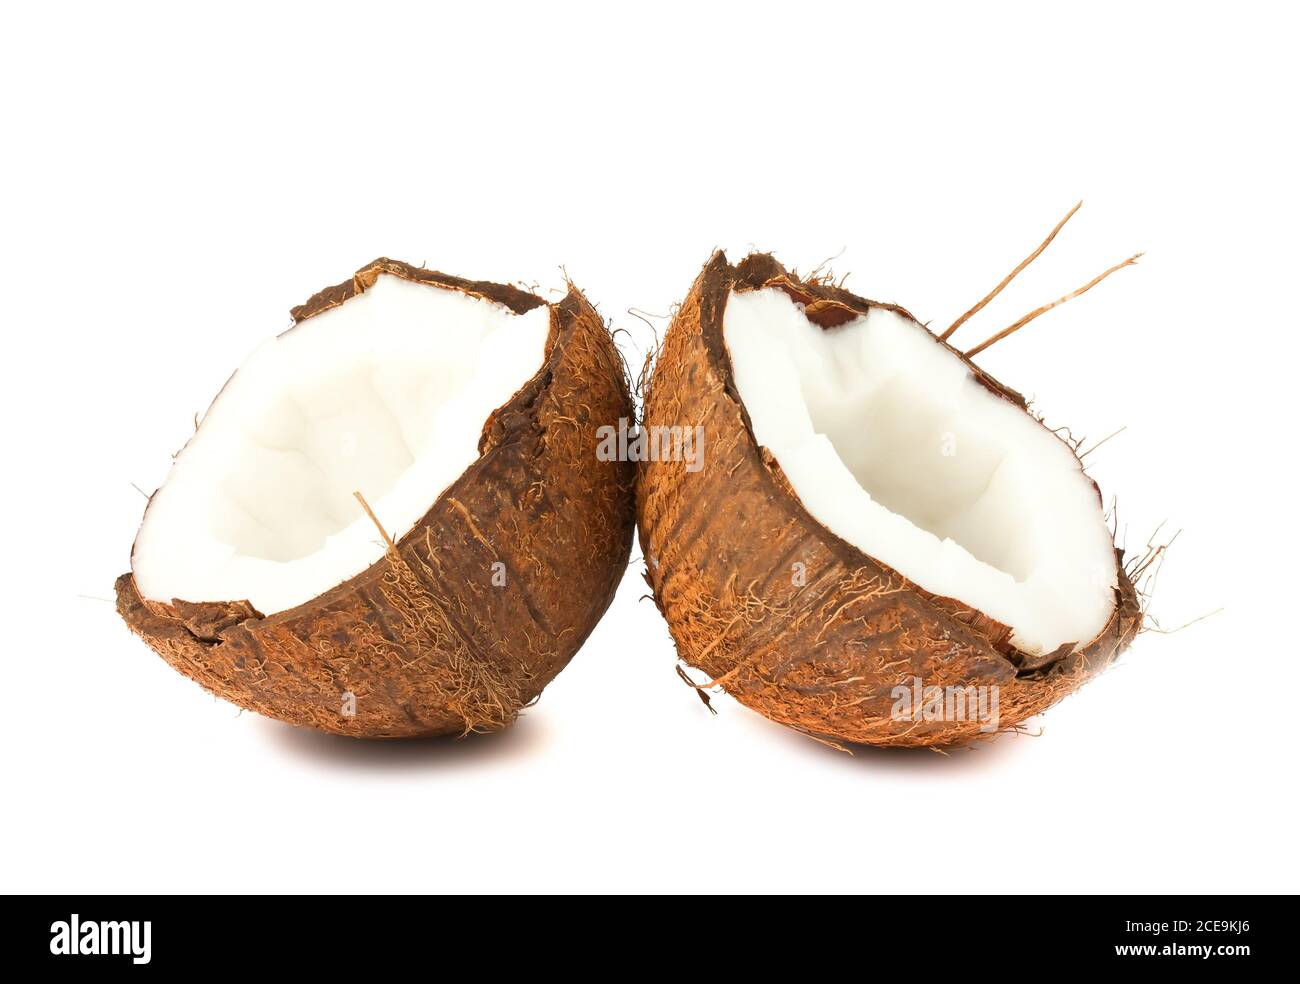 Due metà di noce di cocco su sfondo bianco Foto Stock